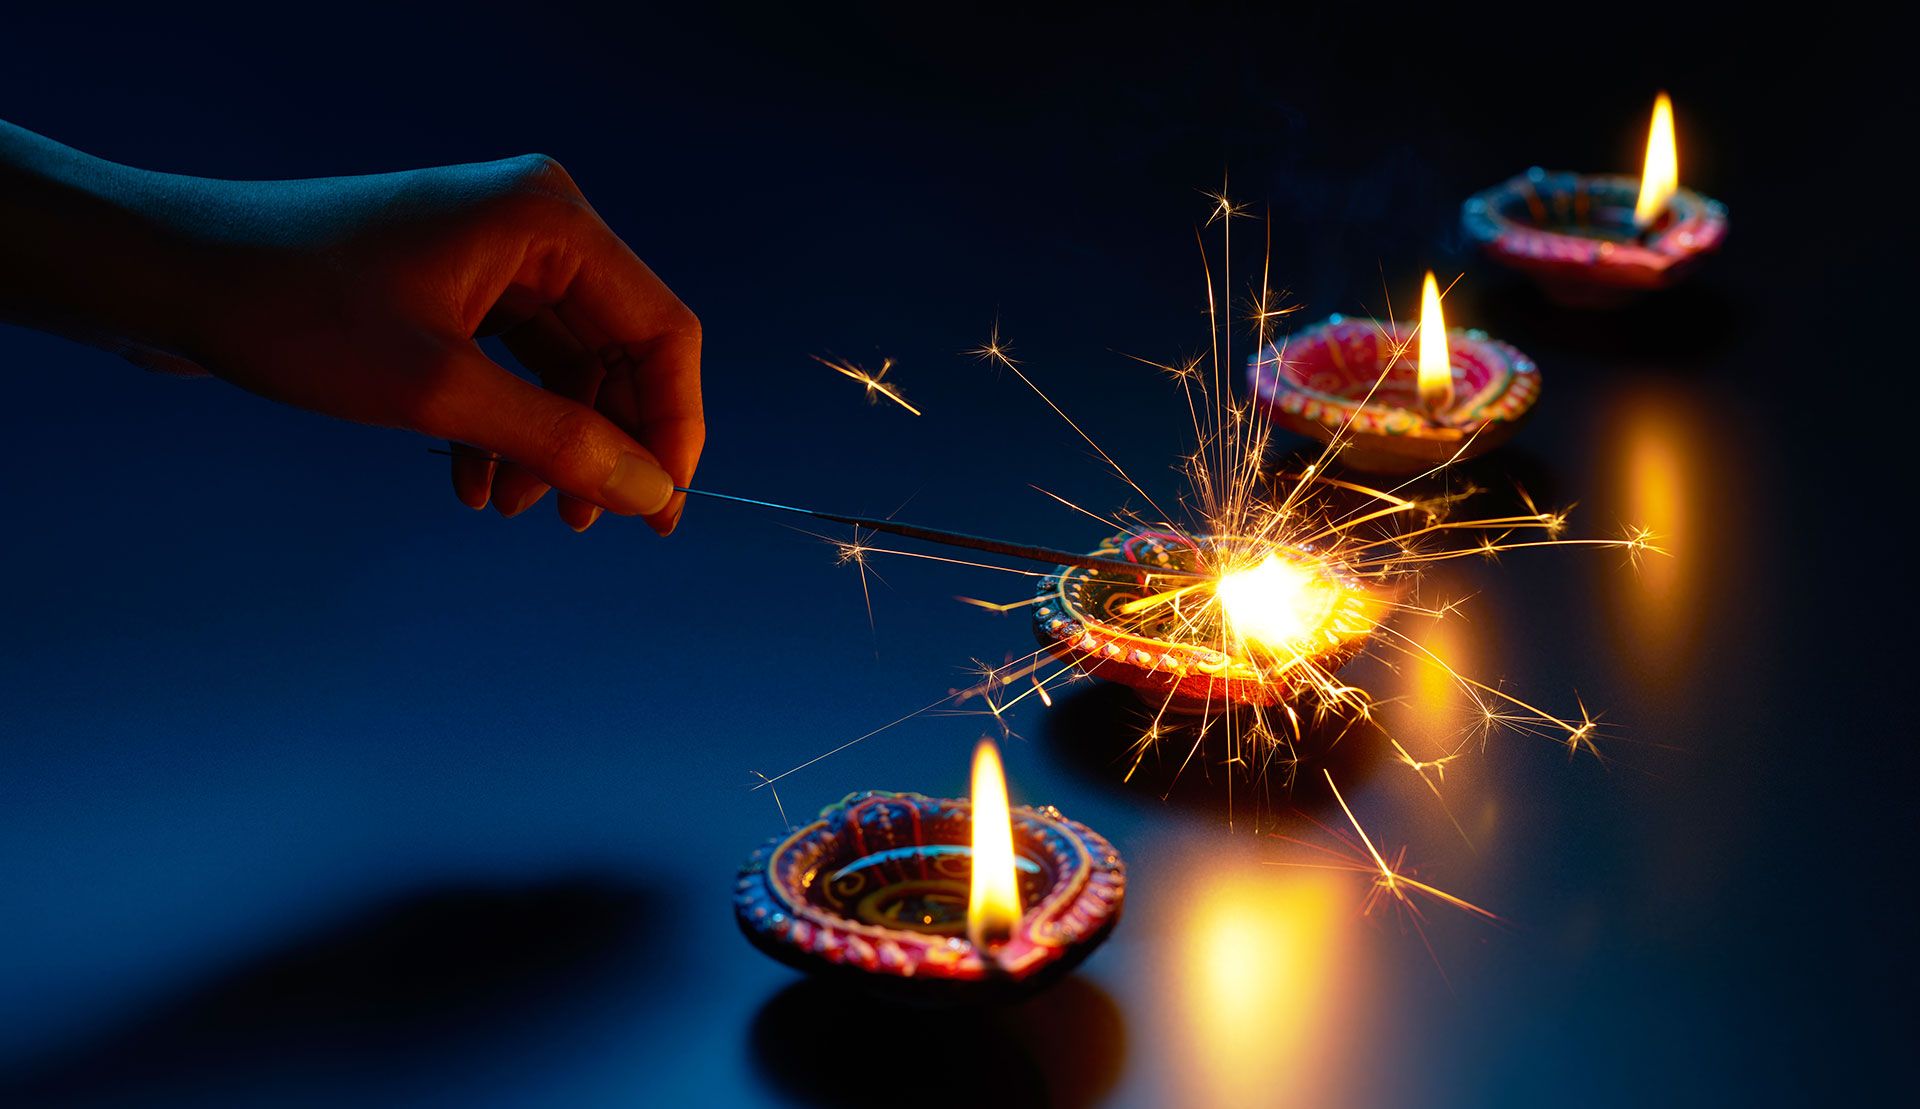 Diwali candles being lit